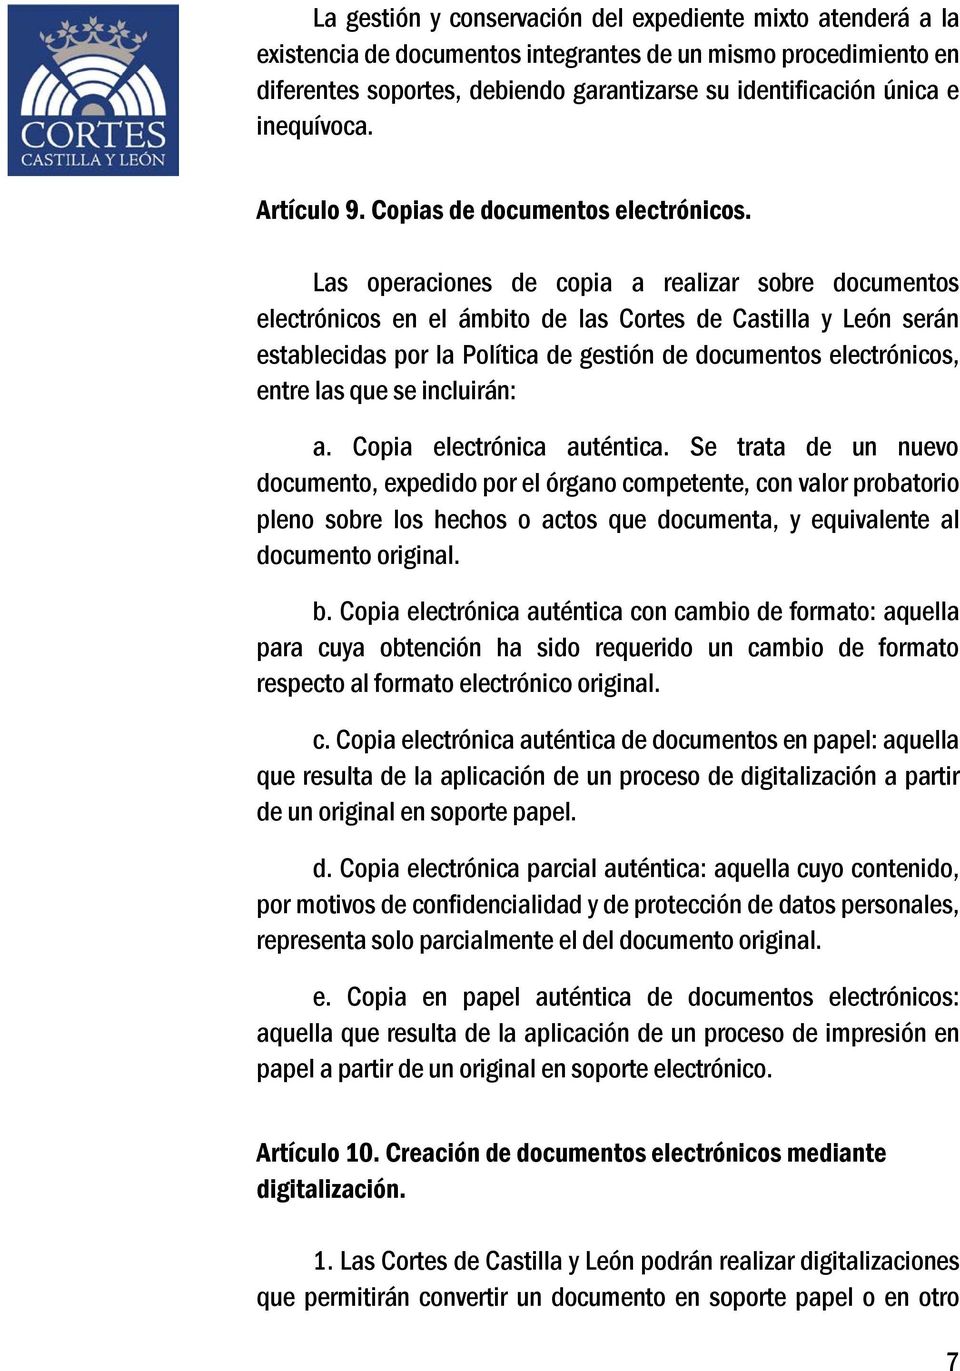 Las operaciones de copia a realizar sobre documentos electrónicos en el ámbito de las Cortes de Castilla y León serán establecidas por la Política de gestión de documentos electrónicos, entre las que